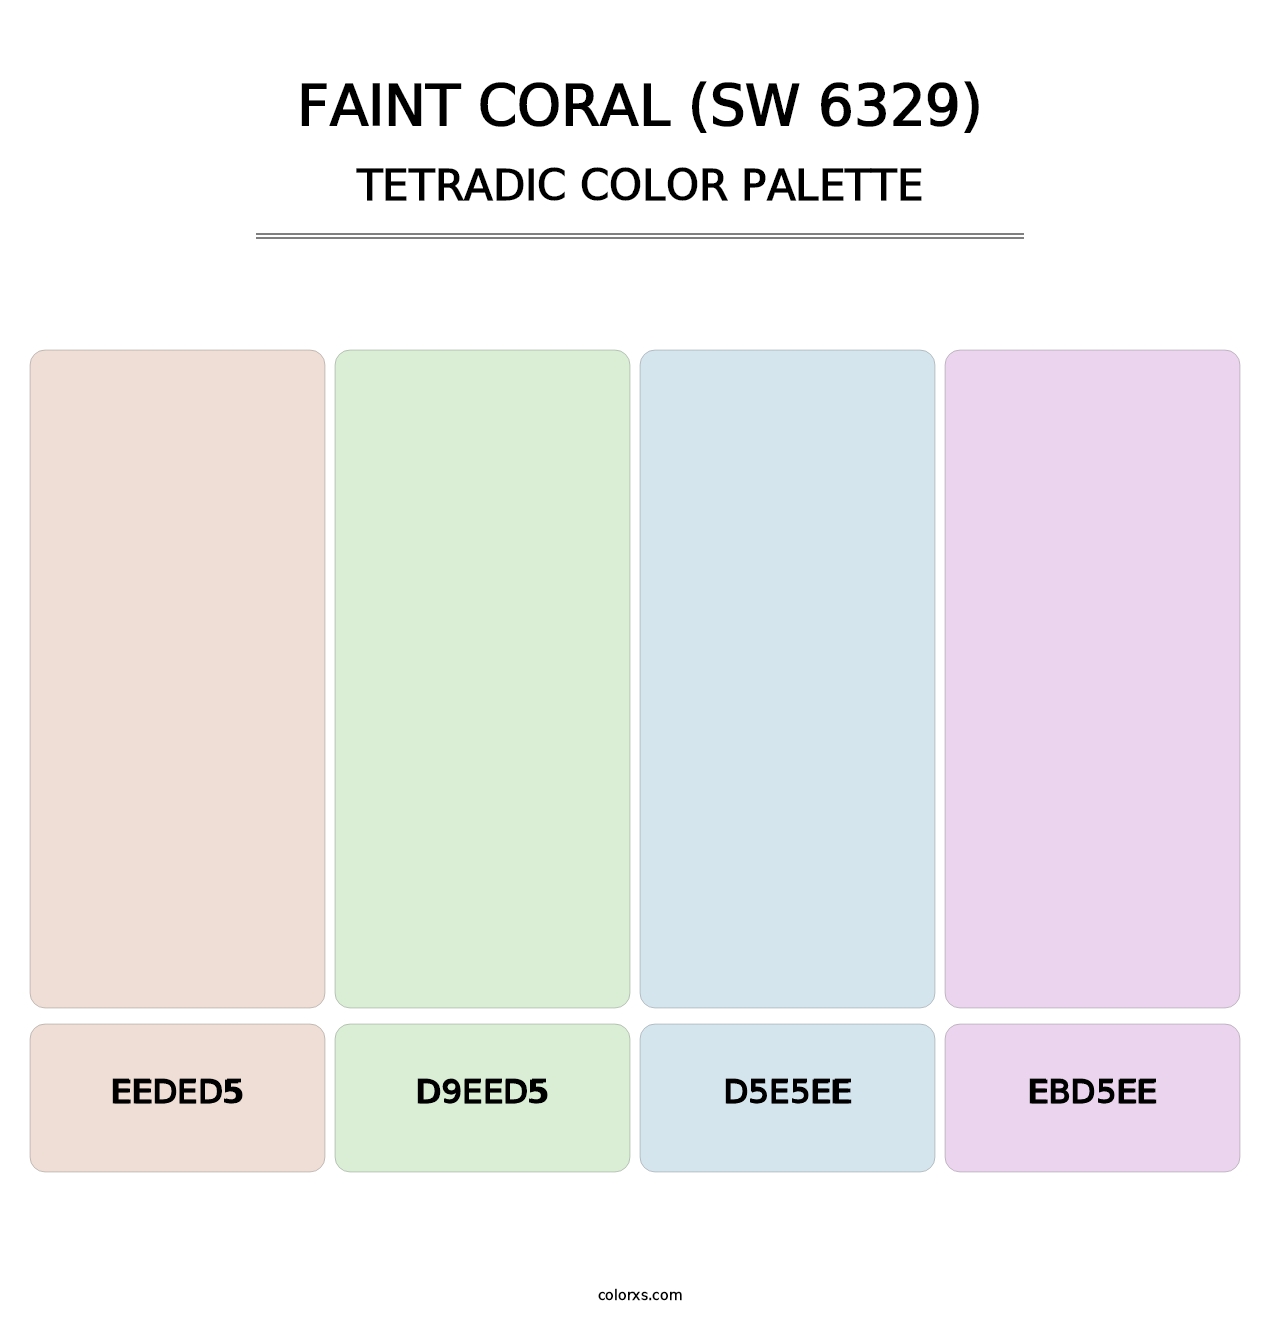 Faint Coral (SW 6329) - Tetradic Color Palette